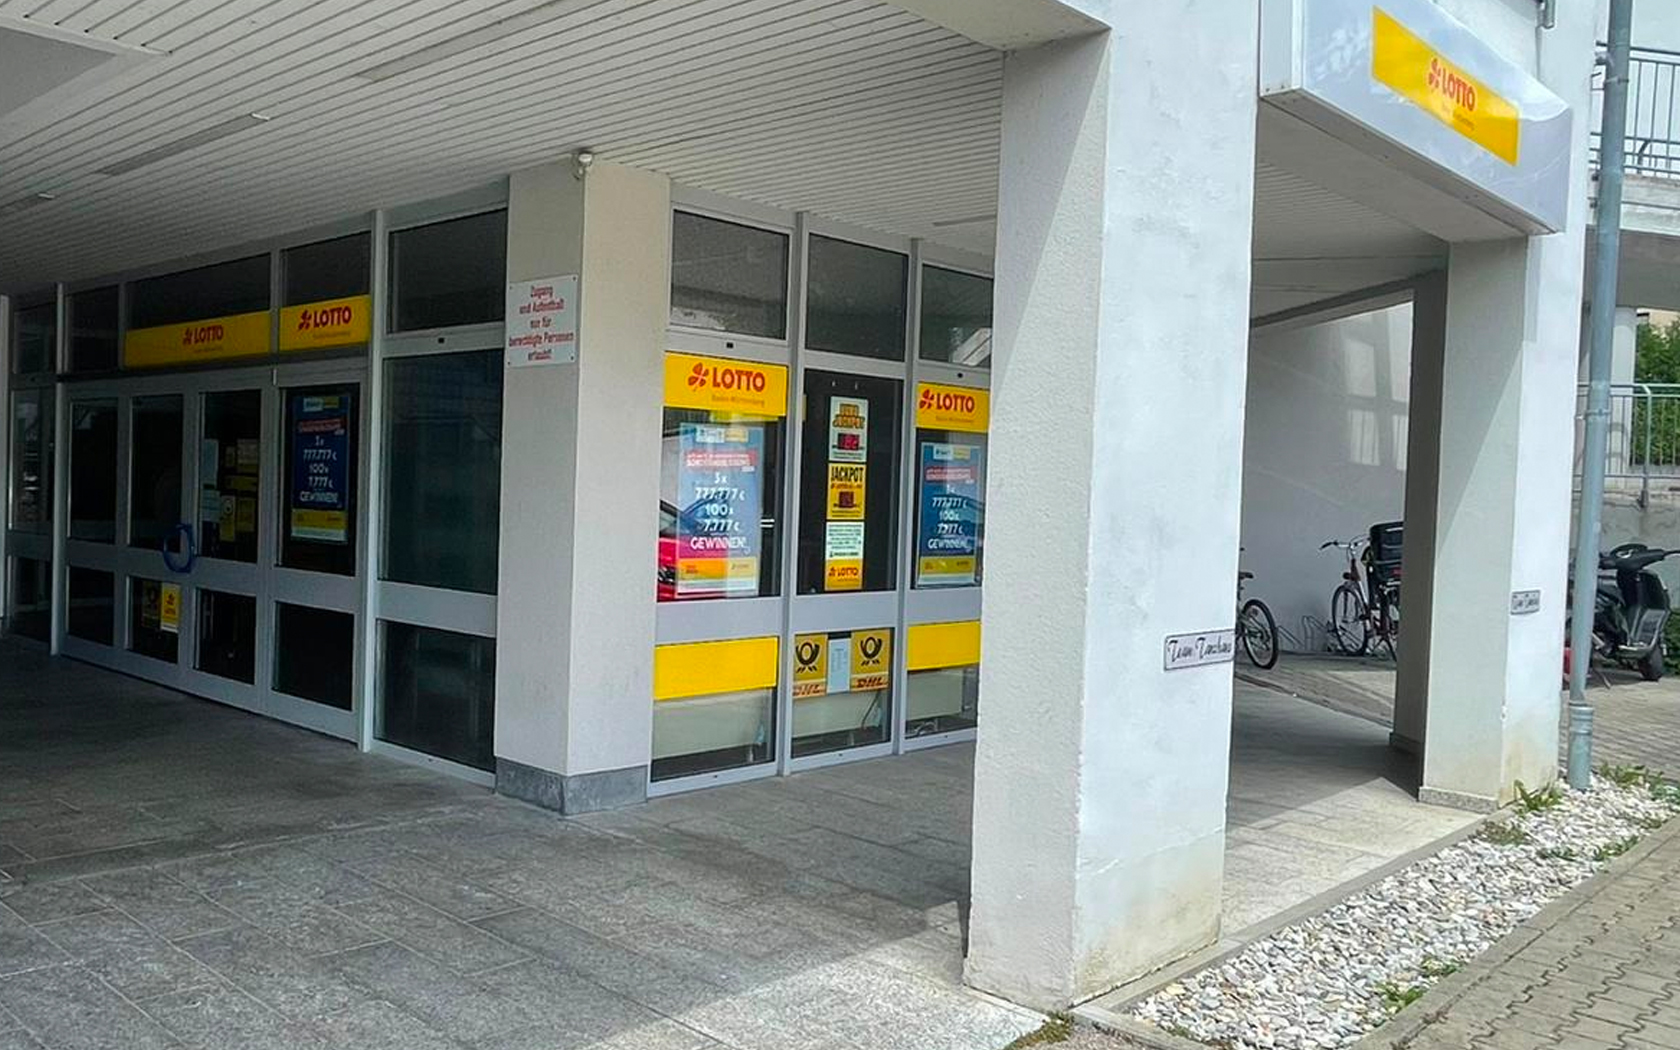 MaWaRei – Annahmestellen – Post und Lotto-Filiale, Heidenheim